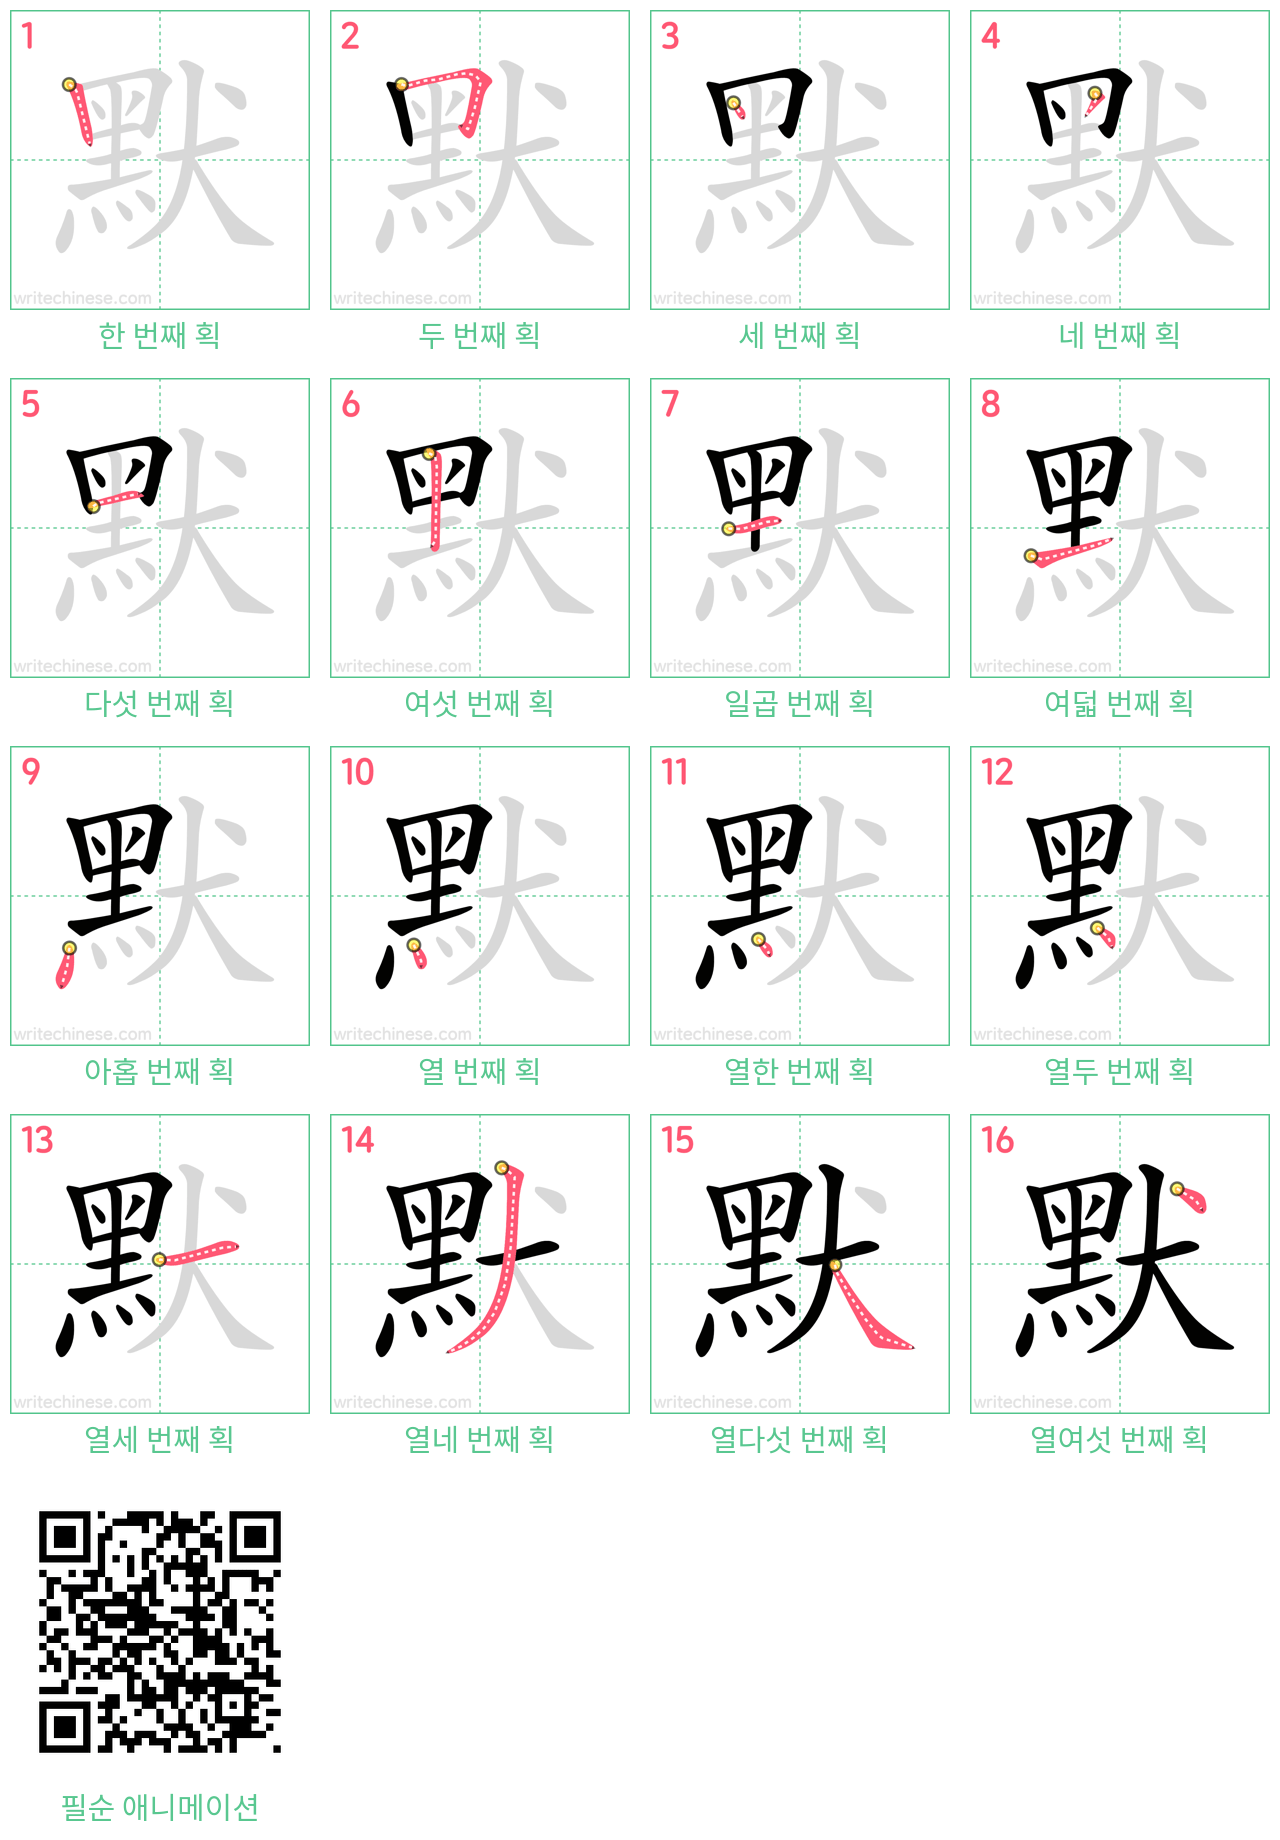 默 step-by-step stroke order diagrams